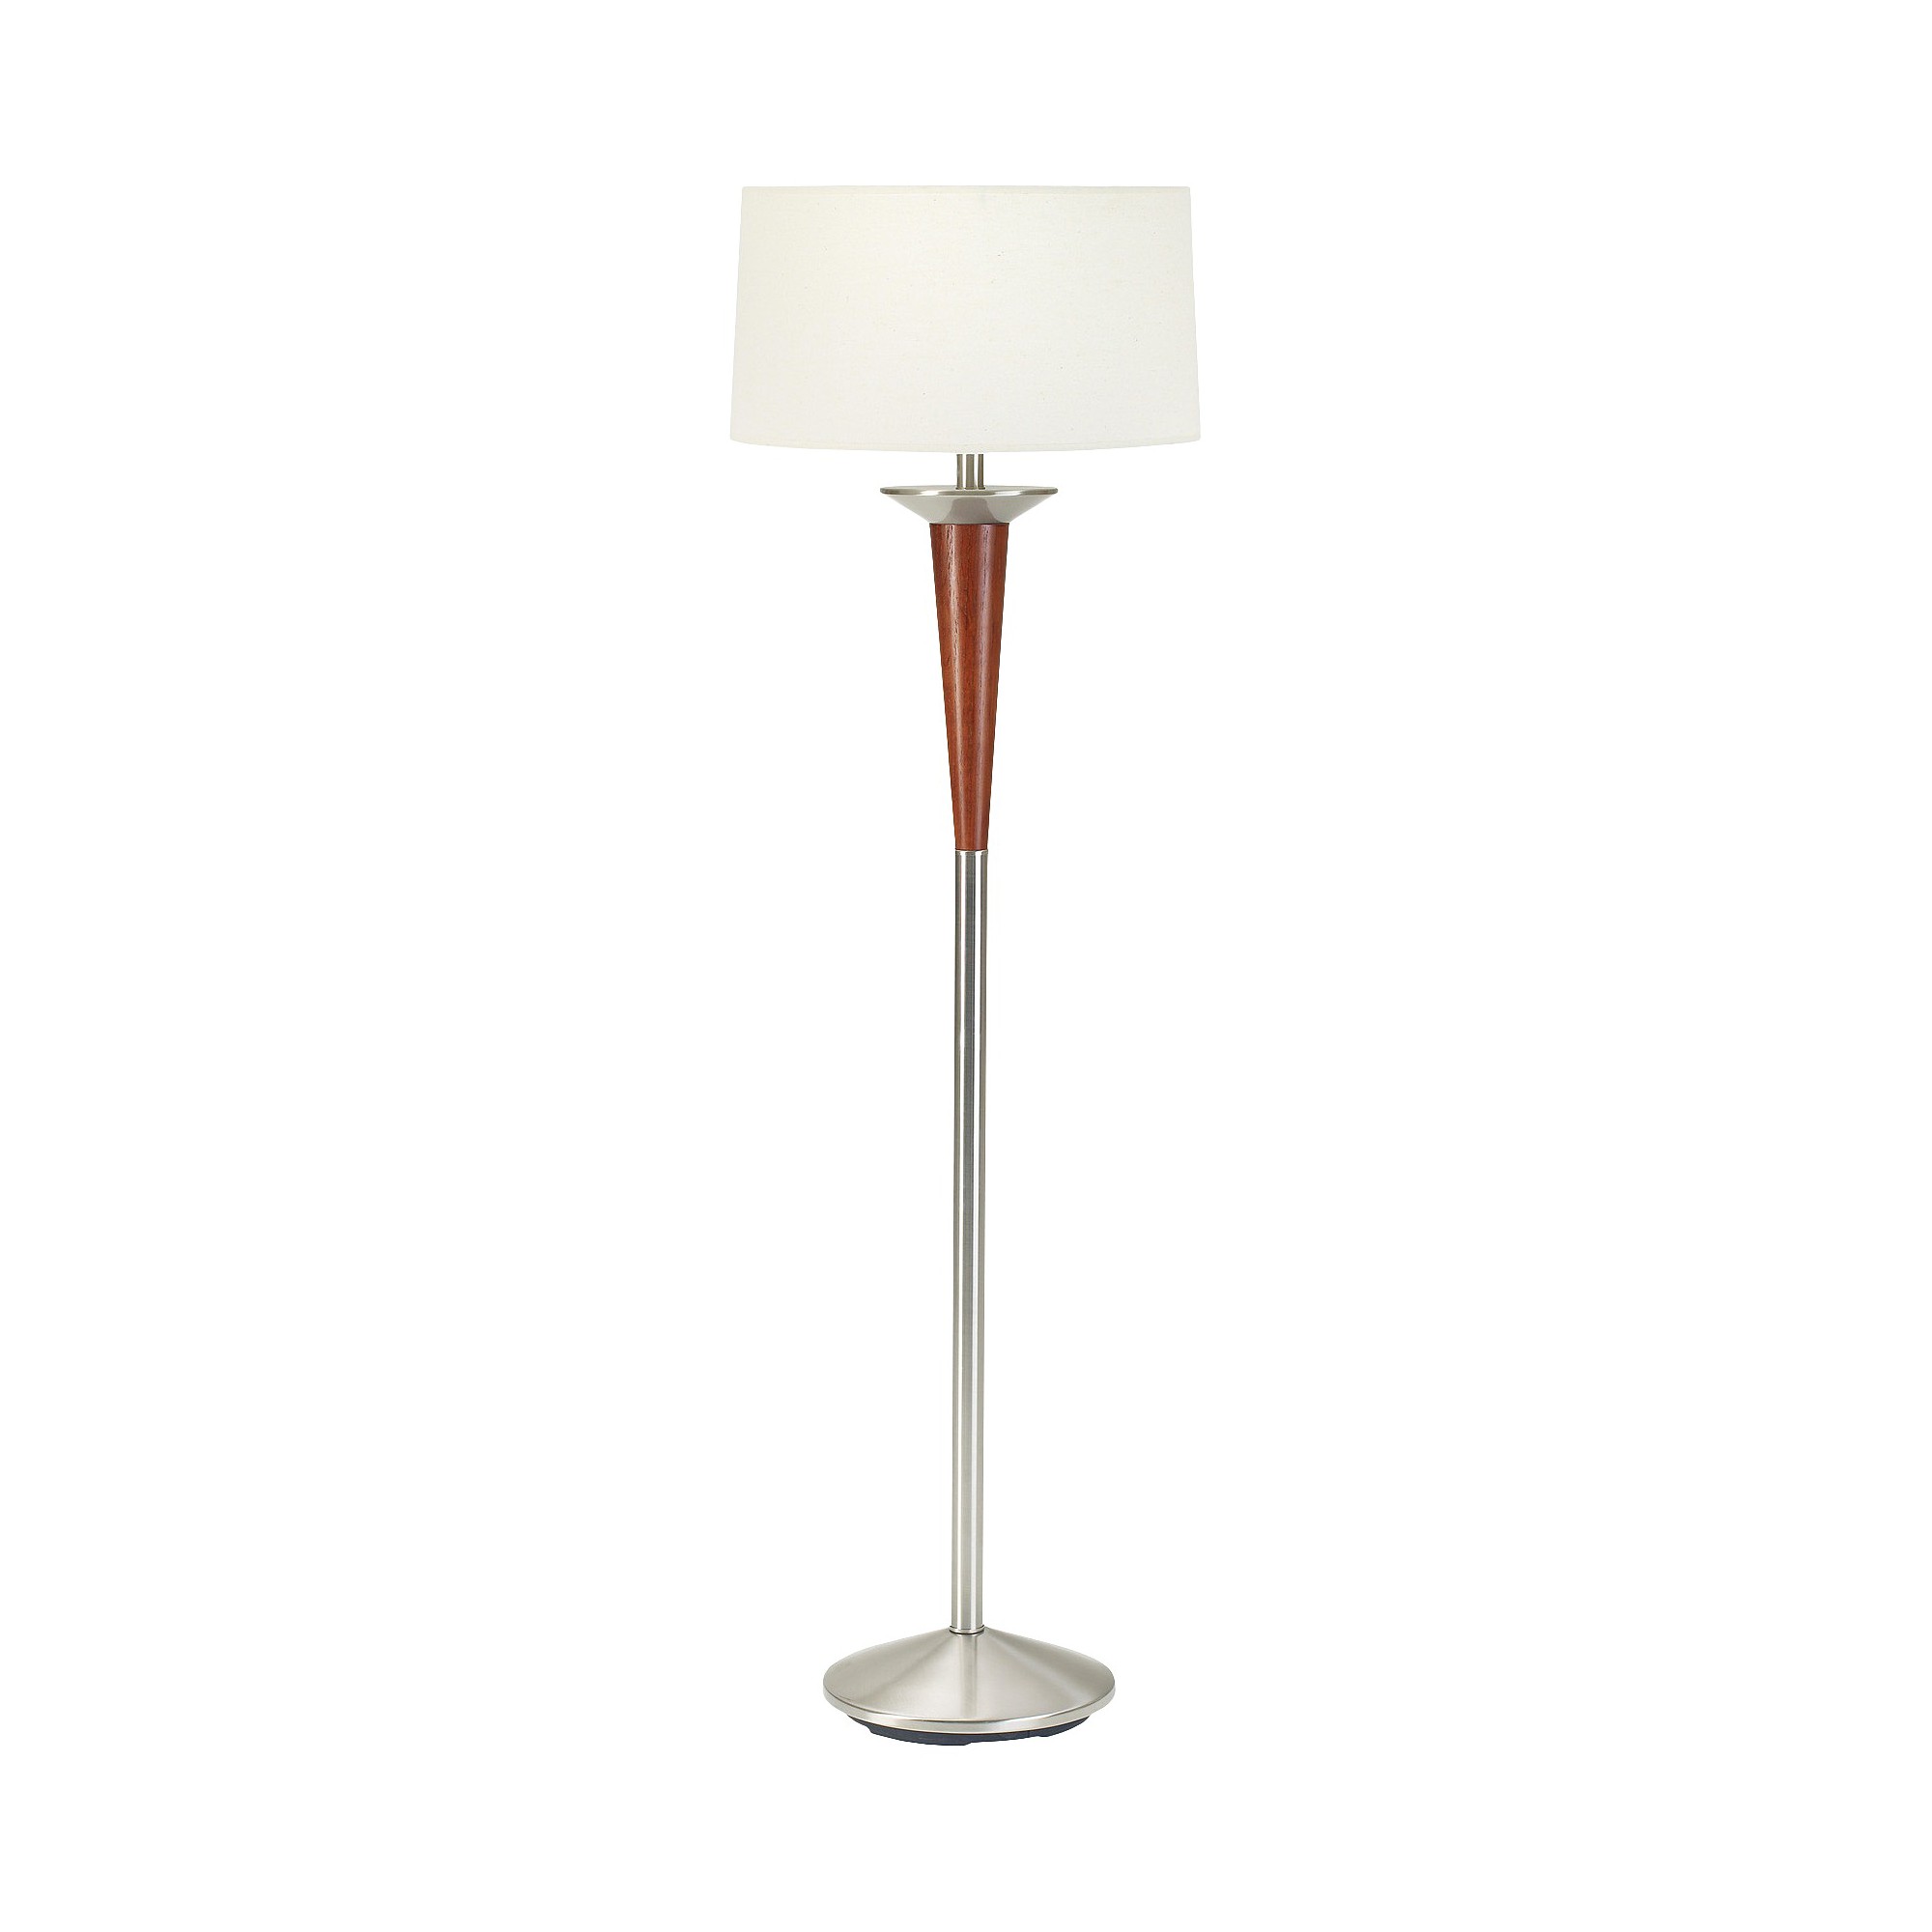 Cherry Wood & Brushed Steel Metal Floor Lamp (Lamp Only)